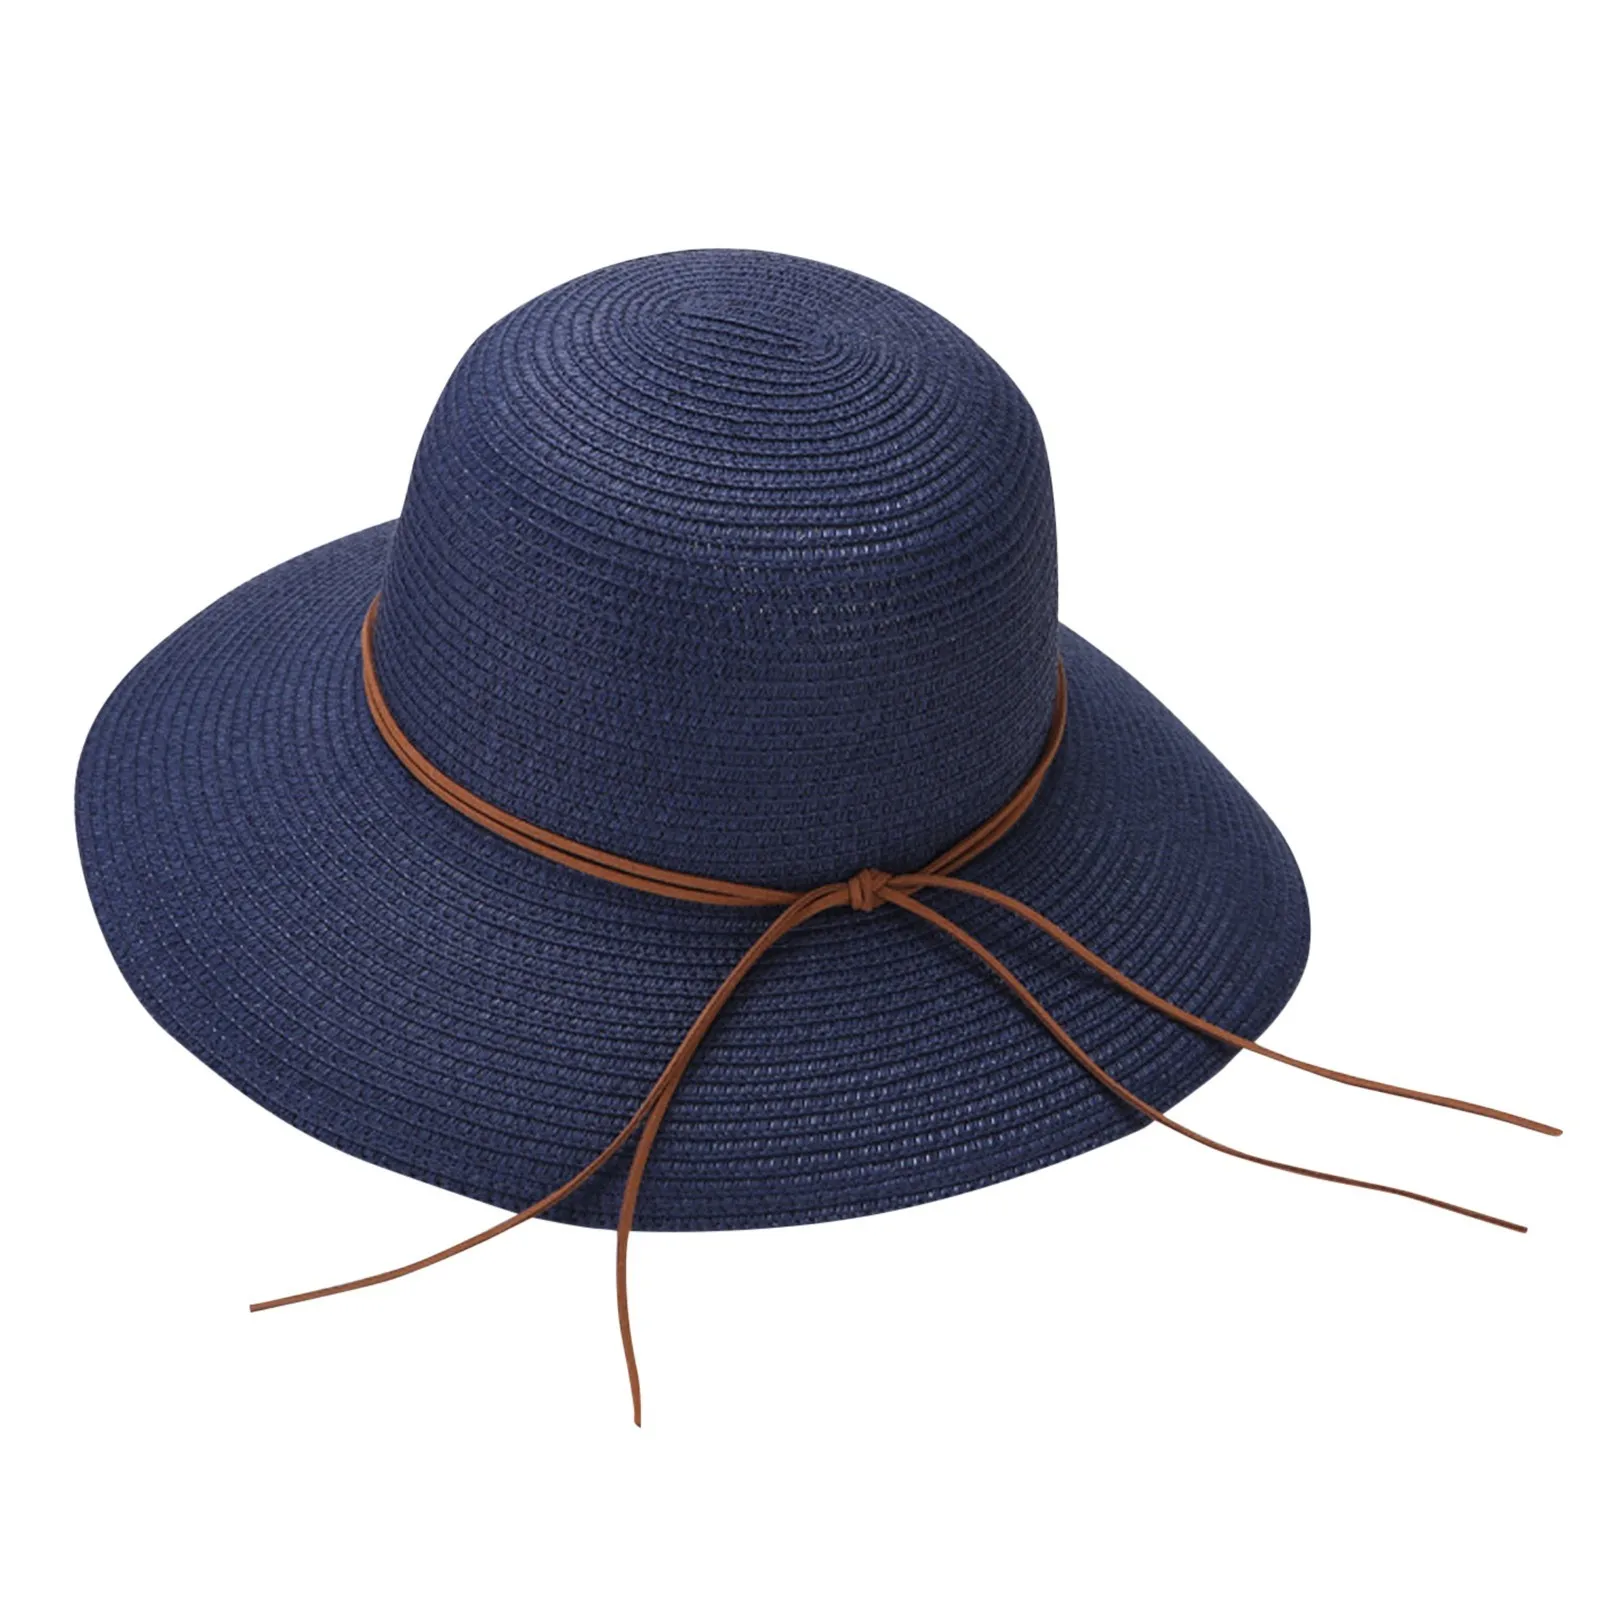 נשים קיץ רחב כובע קש חוף מתקפל שמש כובעים רפוי להפשיל סאן קאפ UPF 50+ כובעי בייסבול החוף כובעים גברים1